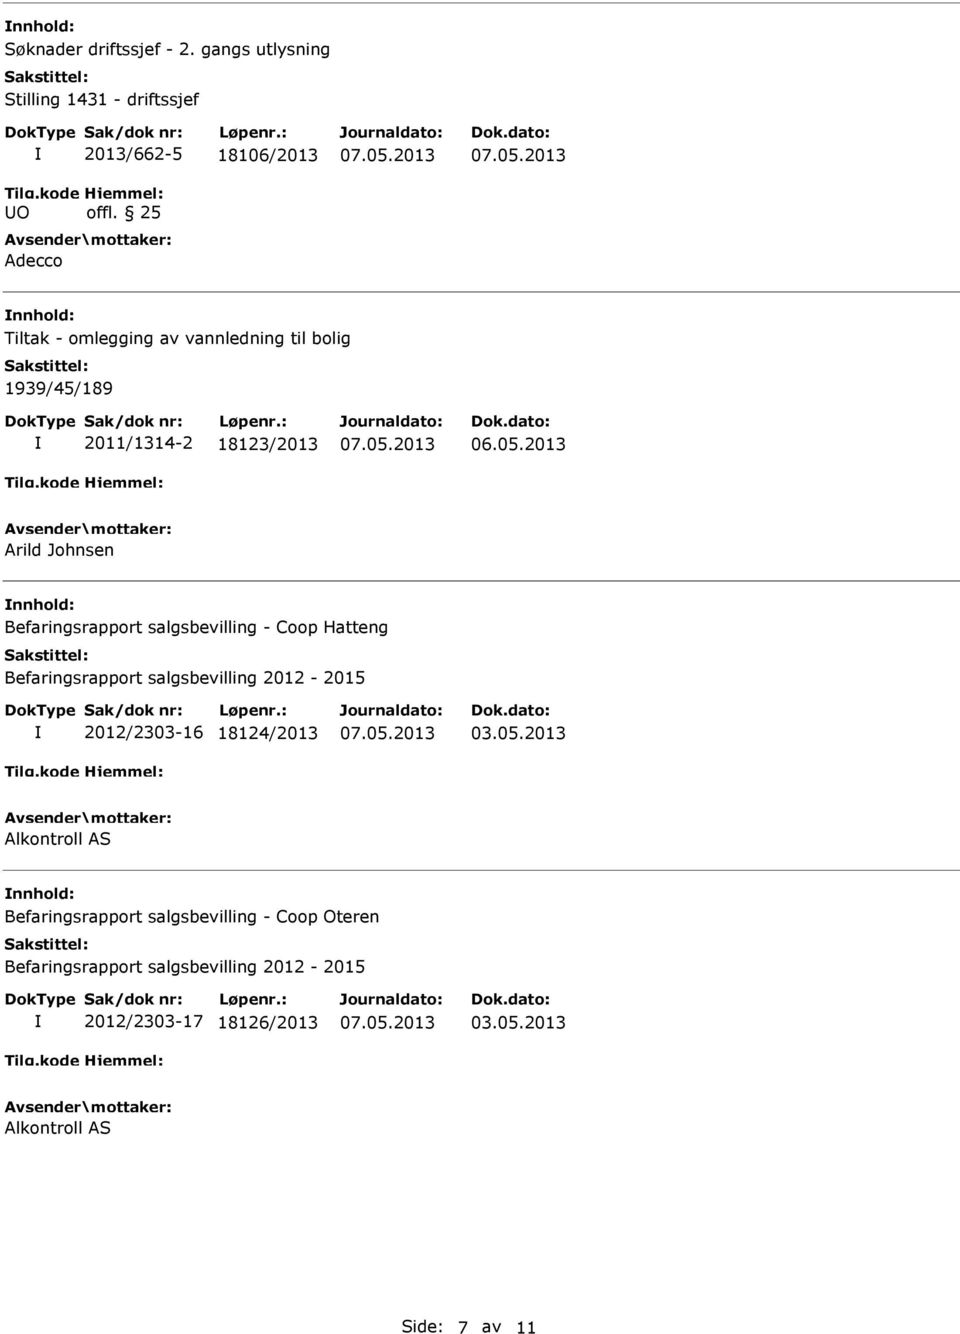 salgsbevilling - Coop Hatteng Befaringsrapport salgsbevilling 2012-2015 2012/2303-16 18124/2013 03.05.